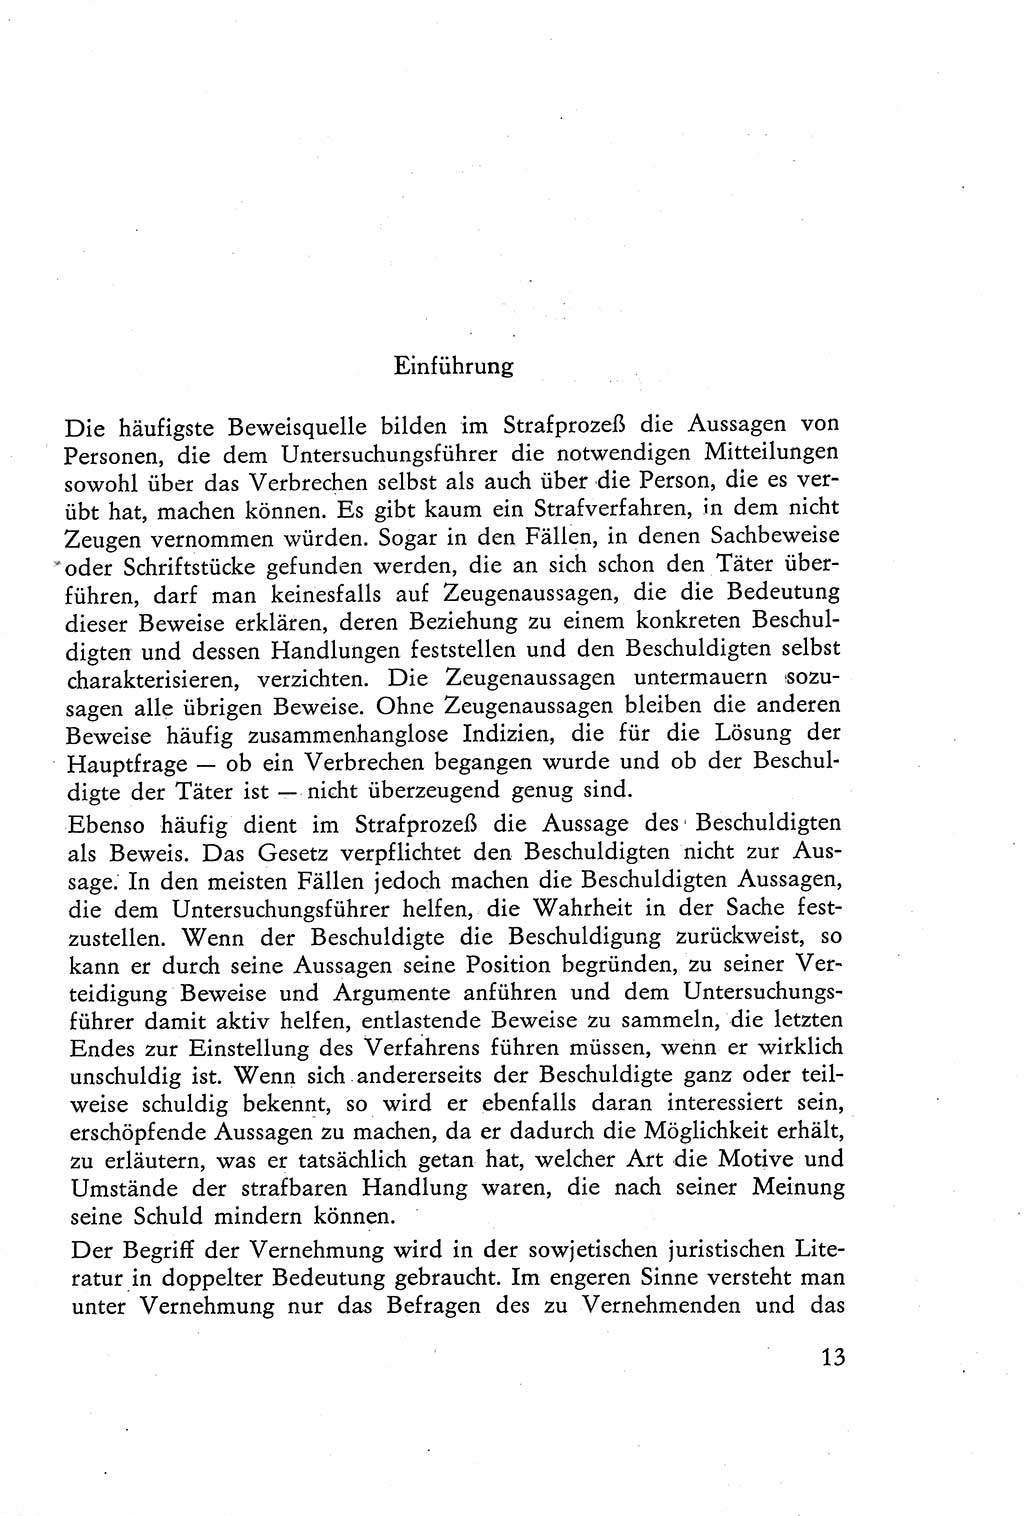 Die Vernehmung [Deutsche Demokratische Republik (DDR)] 1960, Seite 13 (Vern. DDR 1960, S. 13)